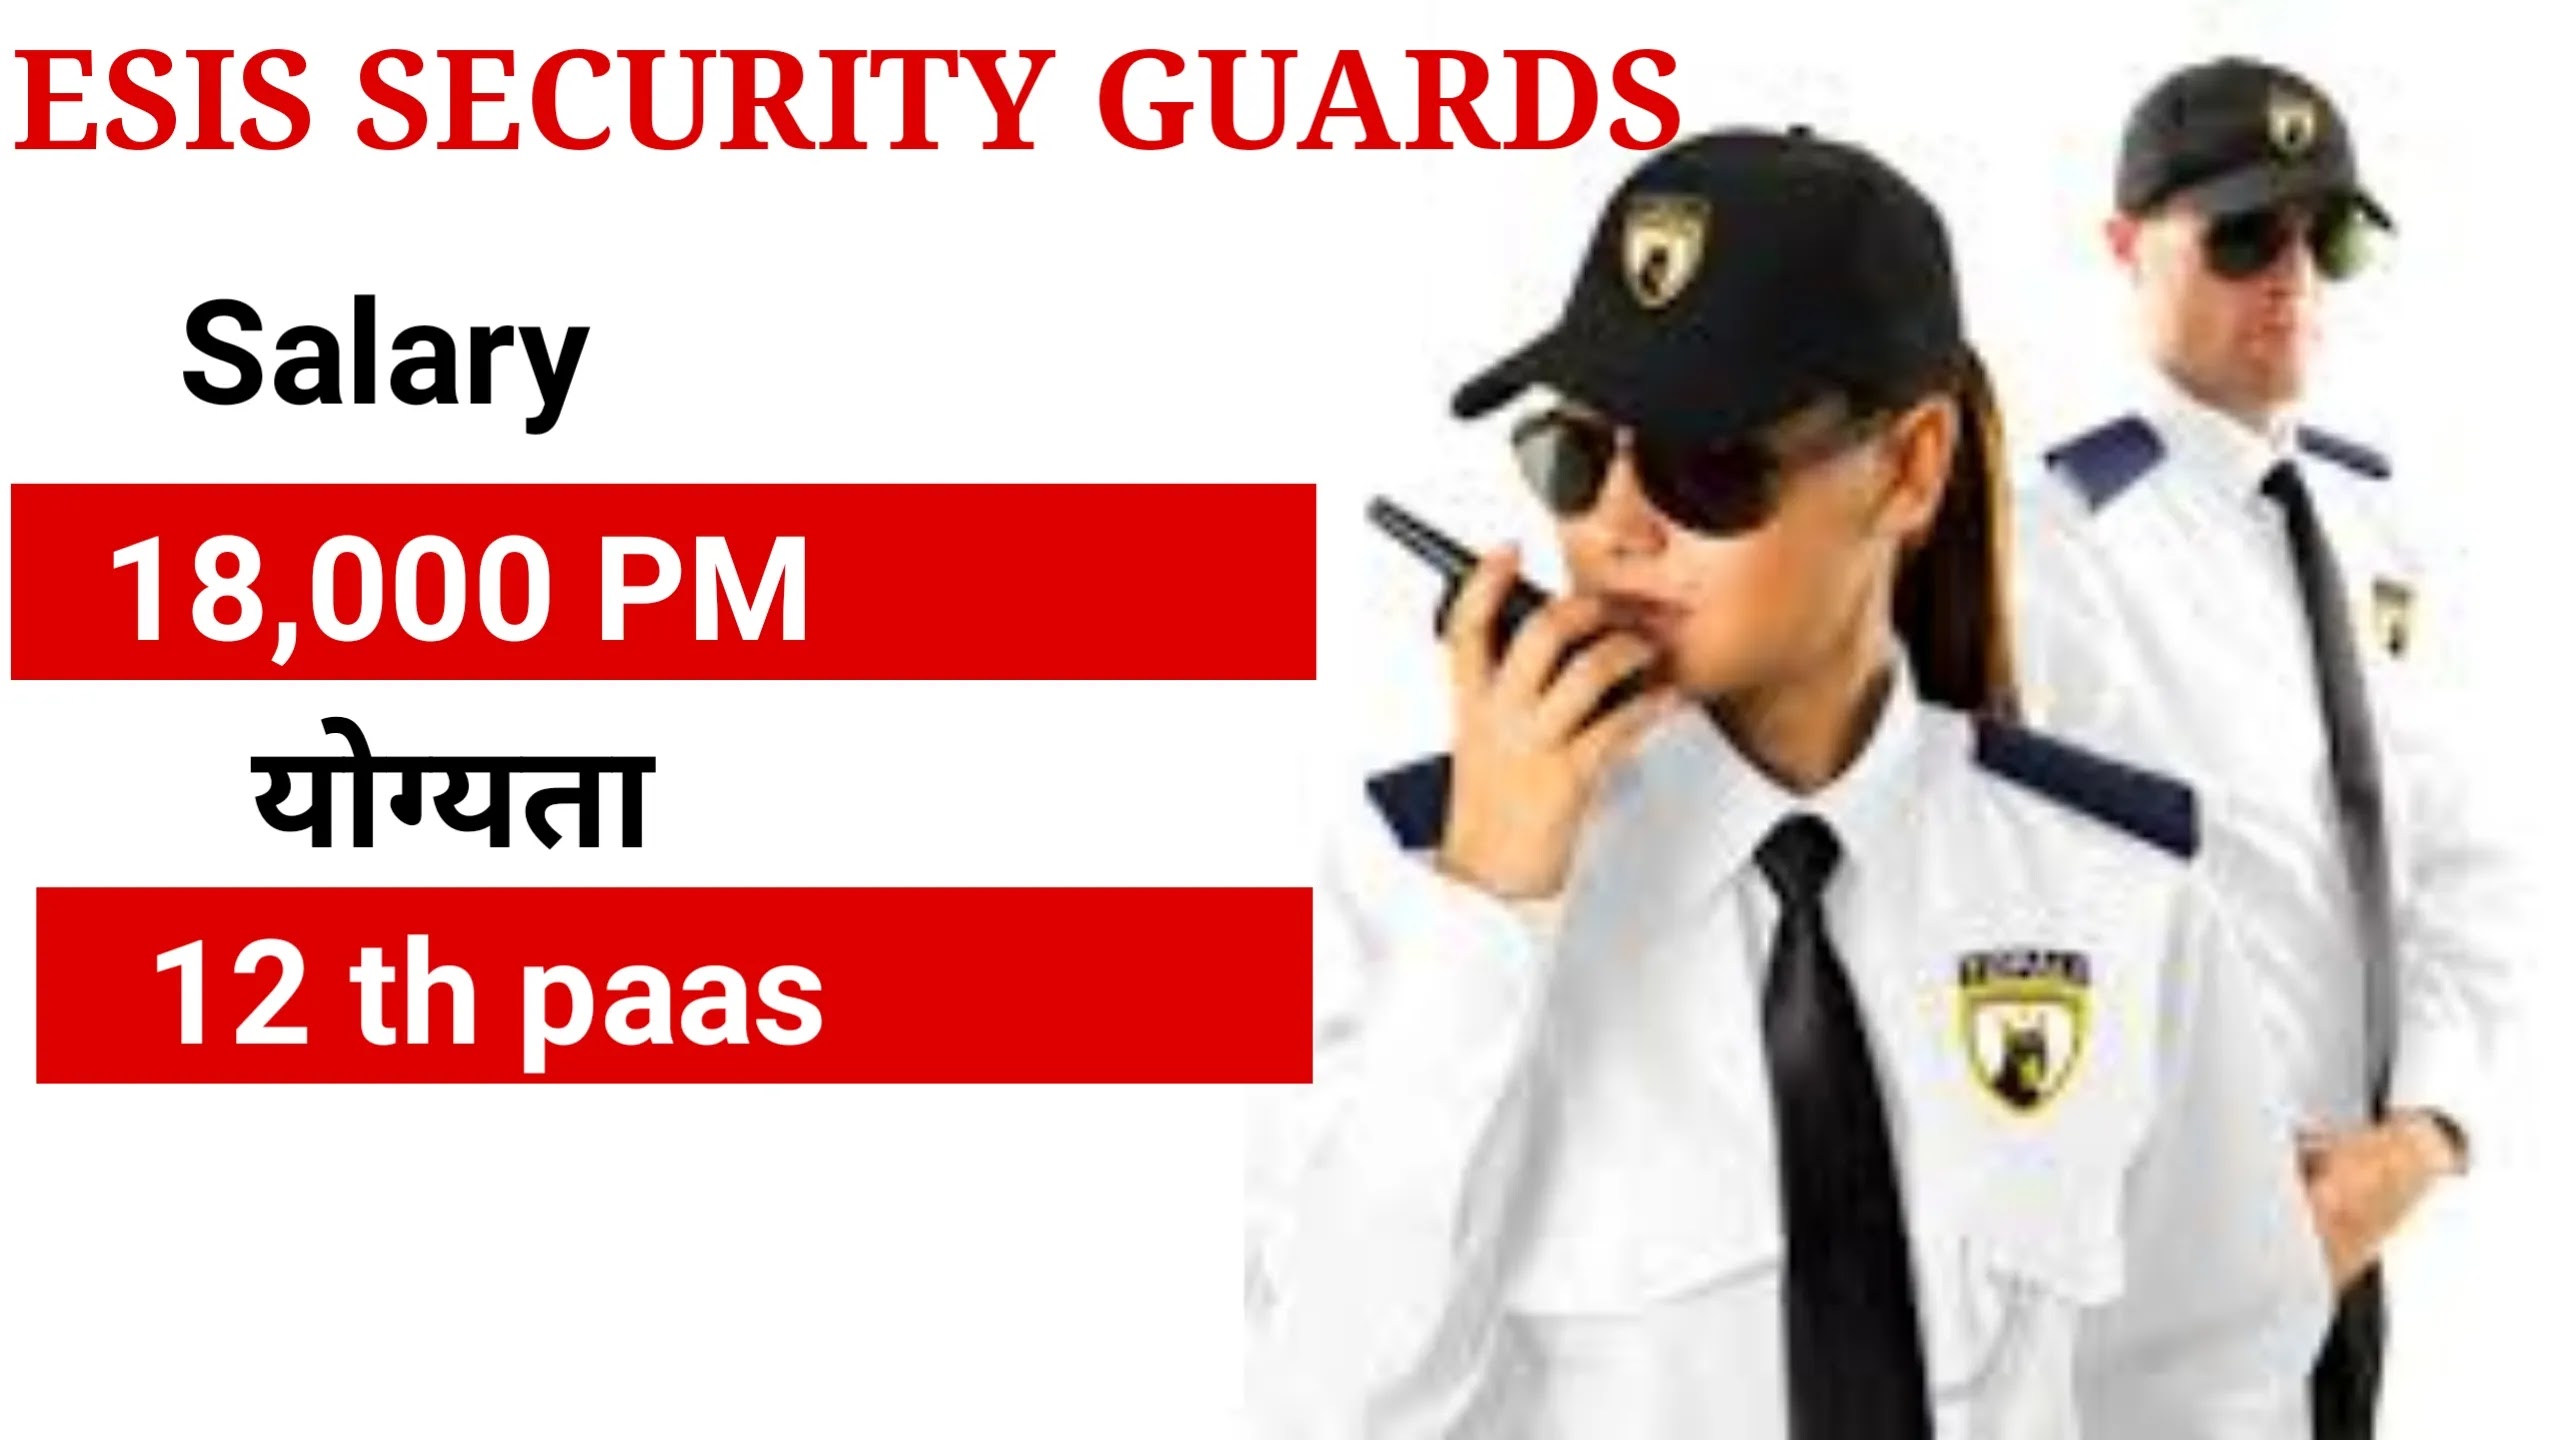 Security guards job